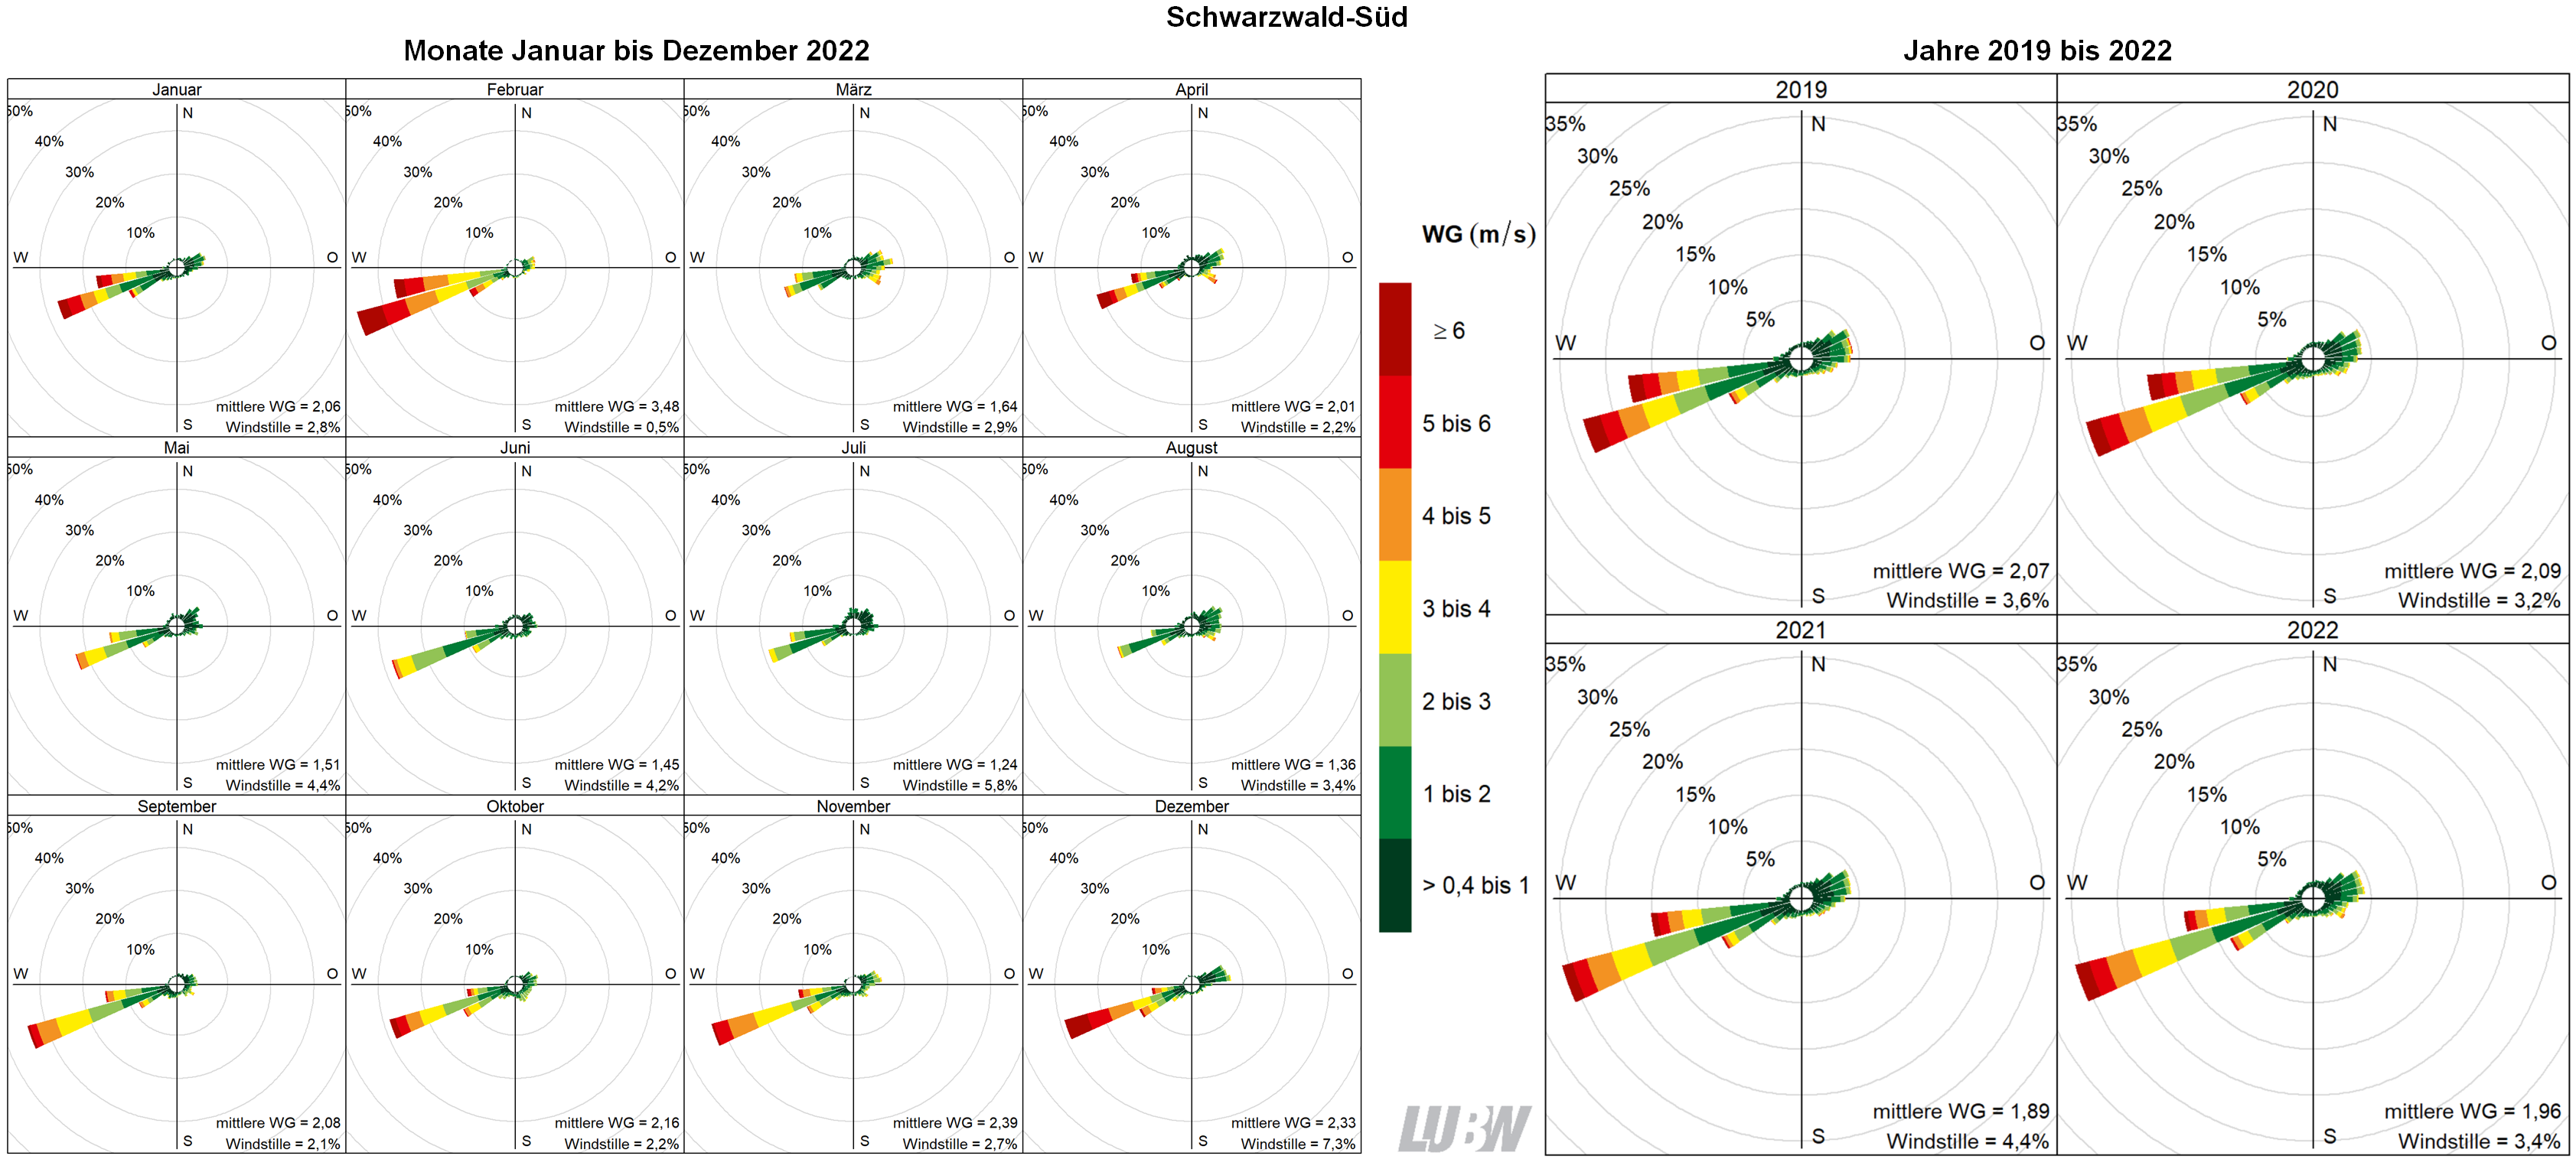  Mitttlere Windverteilung als Windrosen für die Monate Januar bis Dezember 2022 (linke Abbildung) sowie für die Jahre 2019 bis 2022 (rechte Abbildung) für den Standort Schwarzwald-Süd. Weitere Informationen im umliegenden Text. 